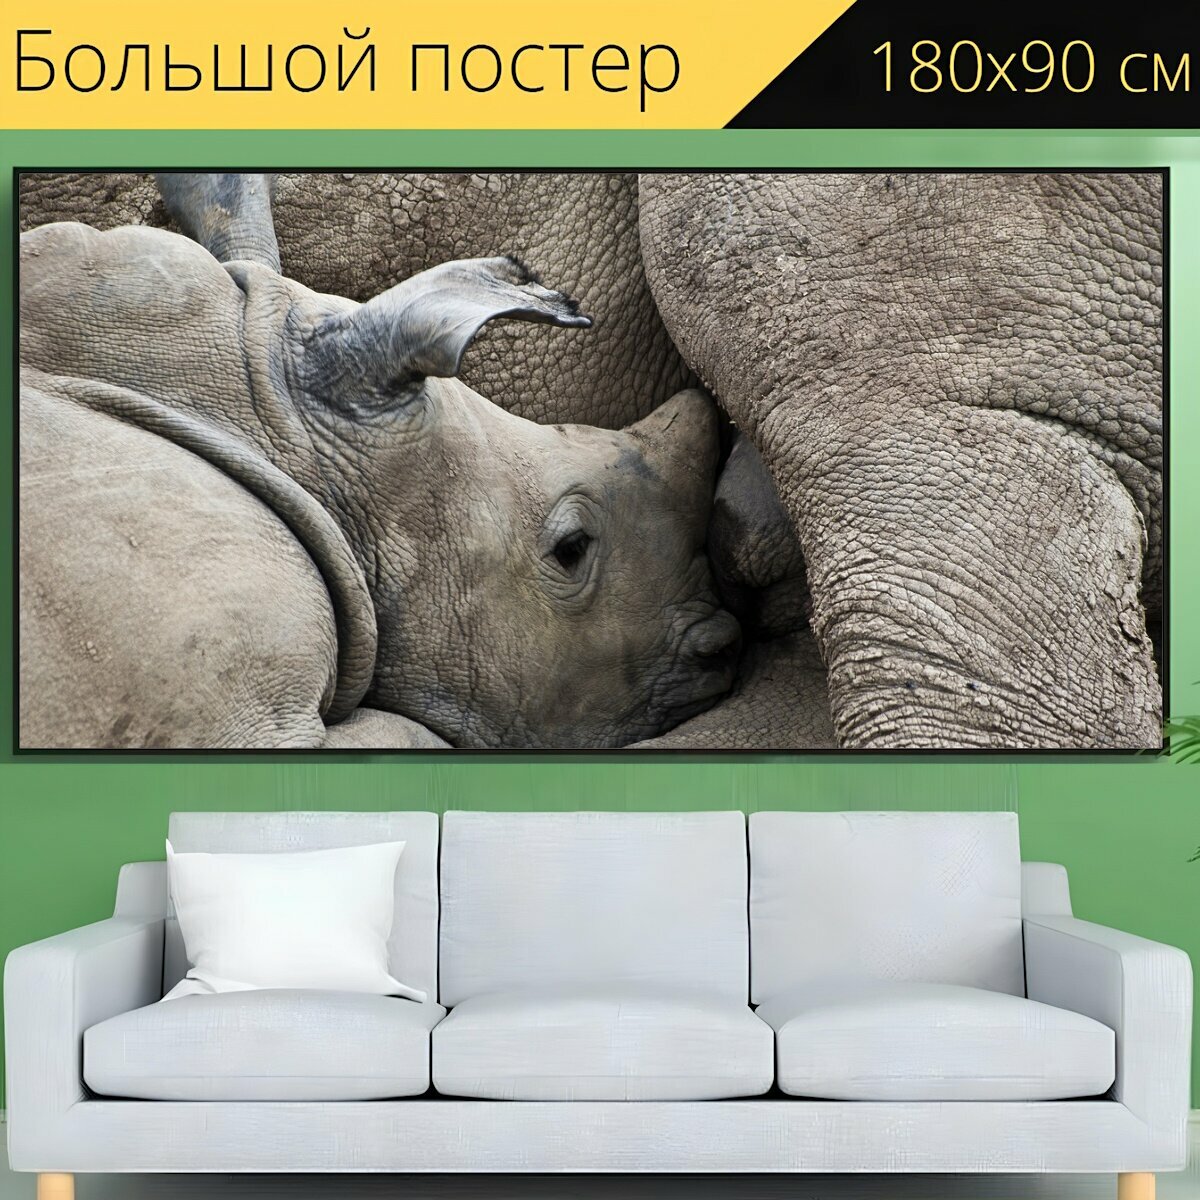 Большой постер "Носорог, детеныш носорога, грудное вскармливание" 180 x 90 см. для интерьера